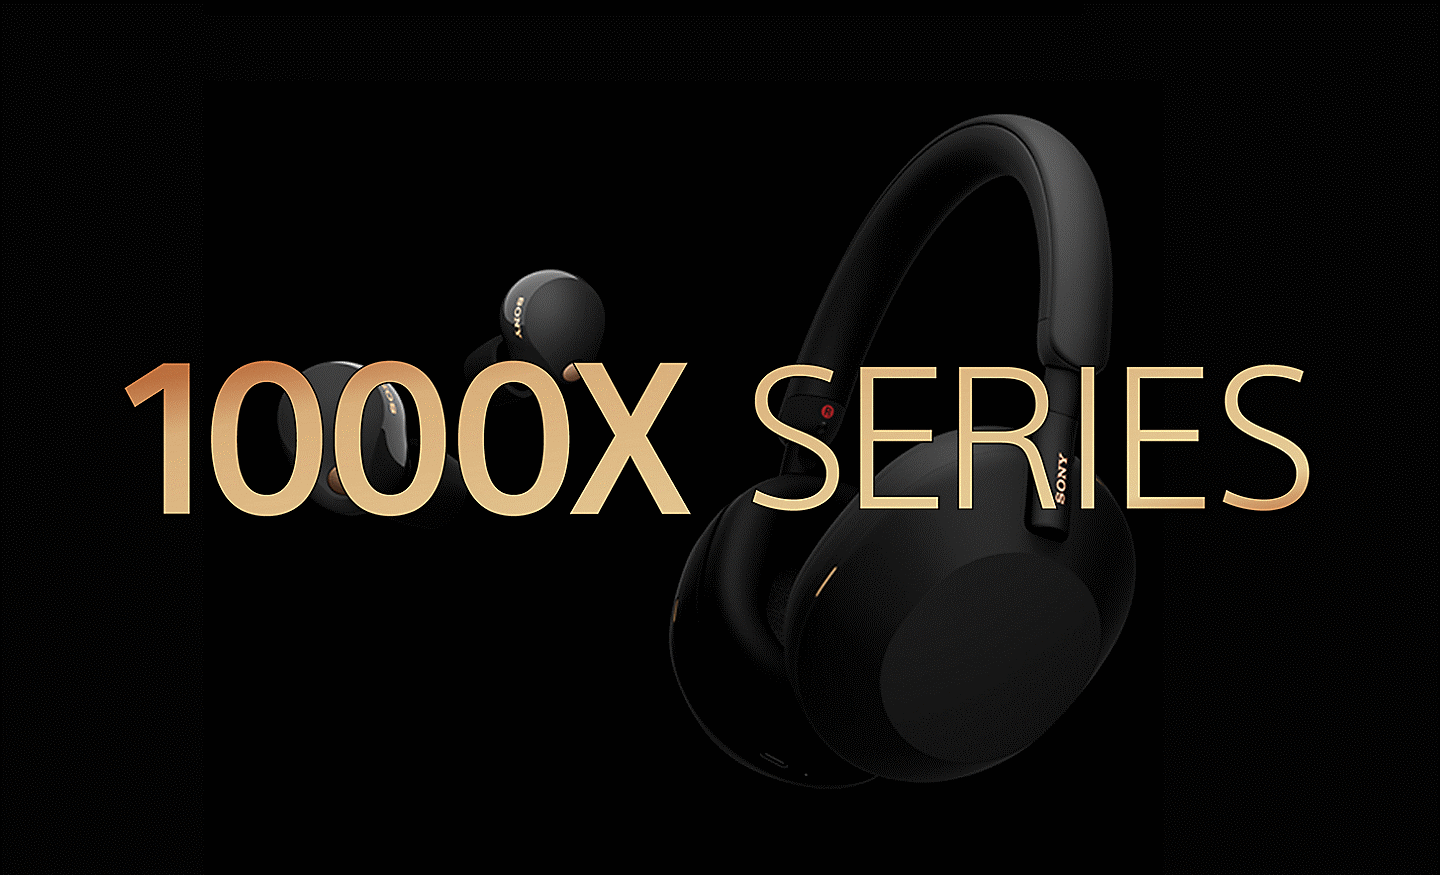 صورة لمجموعتَين من سماعات الرأس من سوني على خلفية سوداء مع نص "1000X SERIES" باللون الذهبي في المقدمة